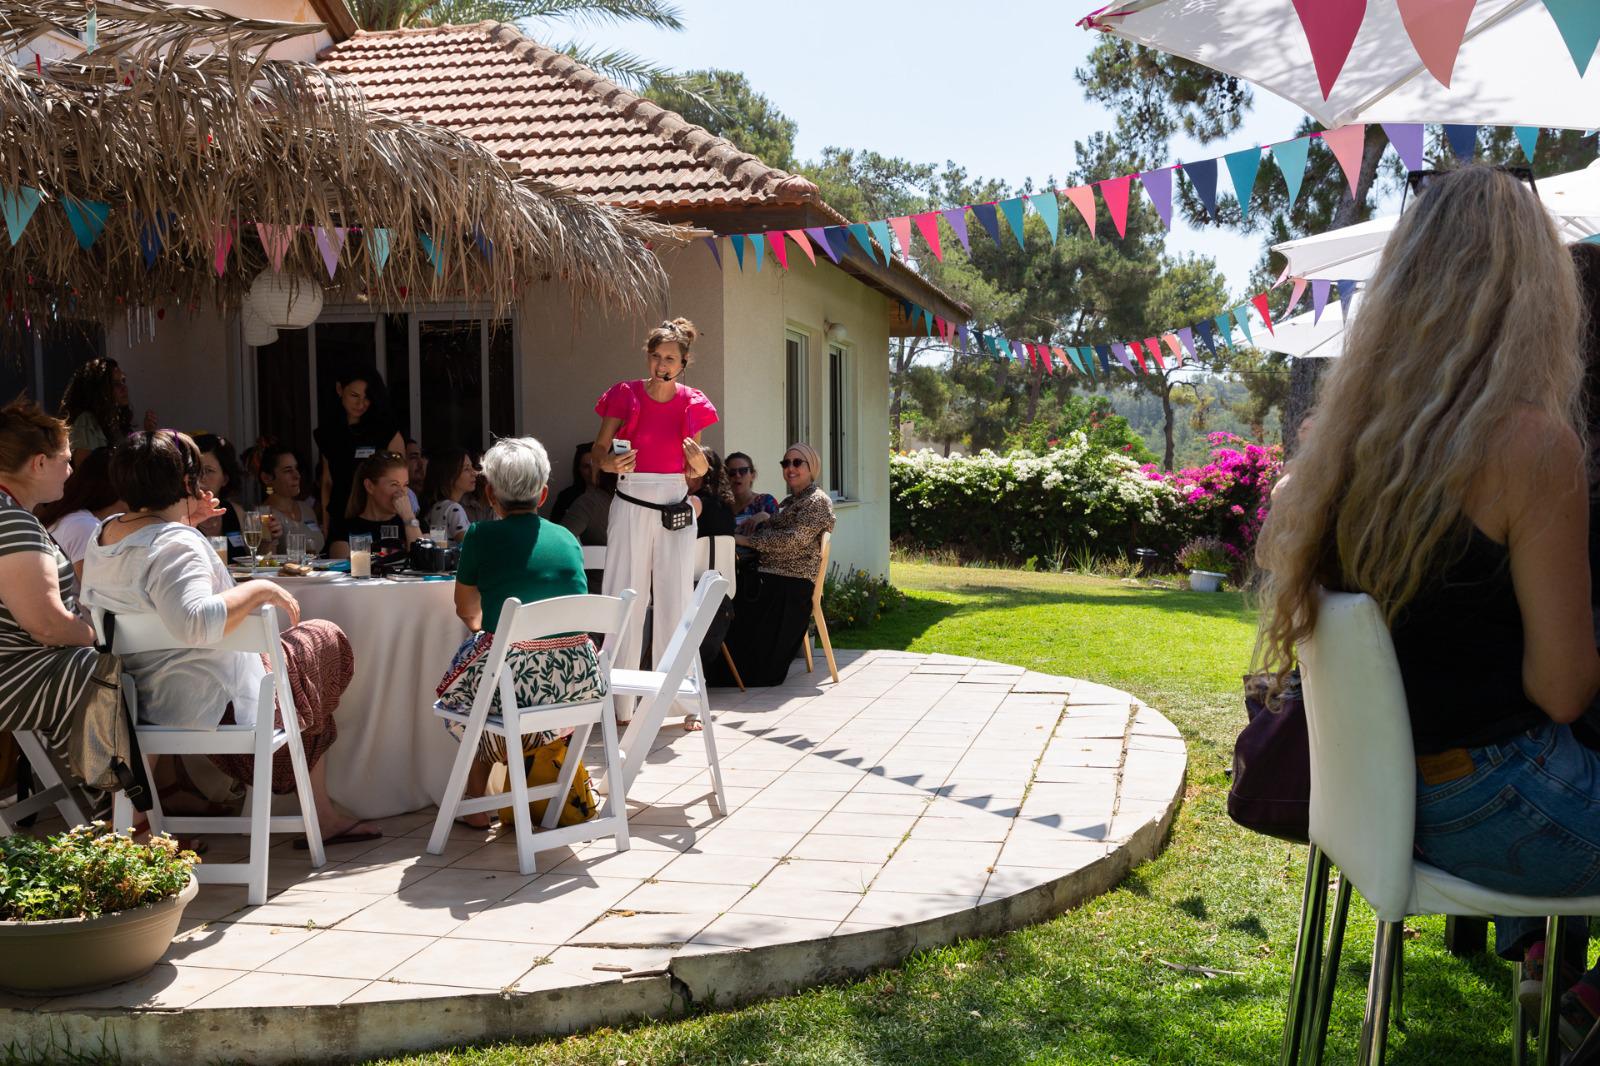 רונית כפיר בהרצאה בחצר הבית שלה עם נשים שיושבות סביב שולחן